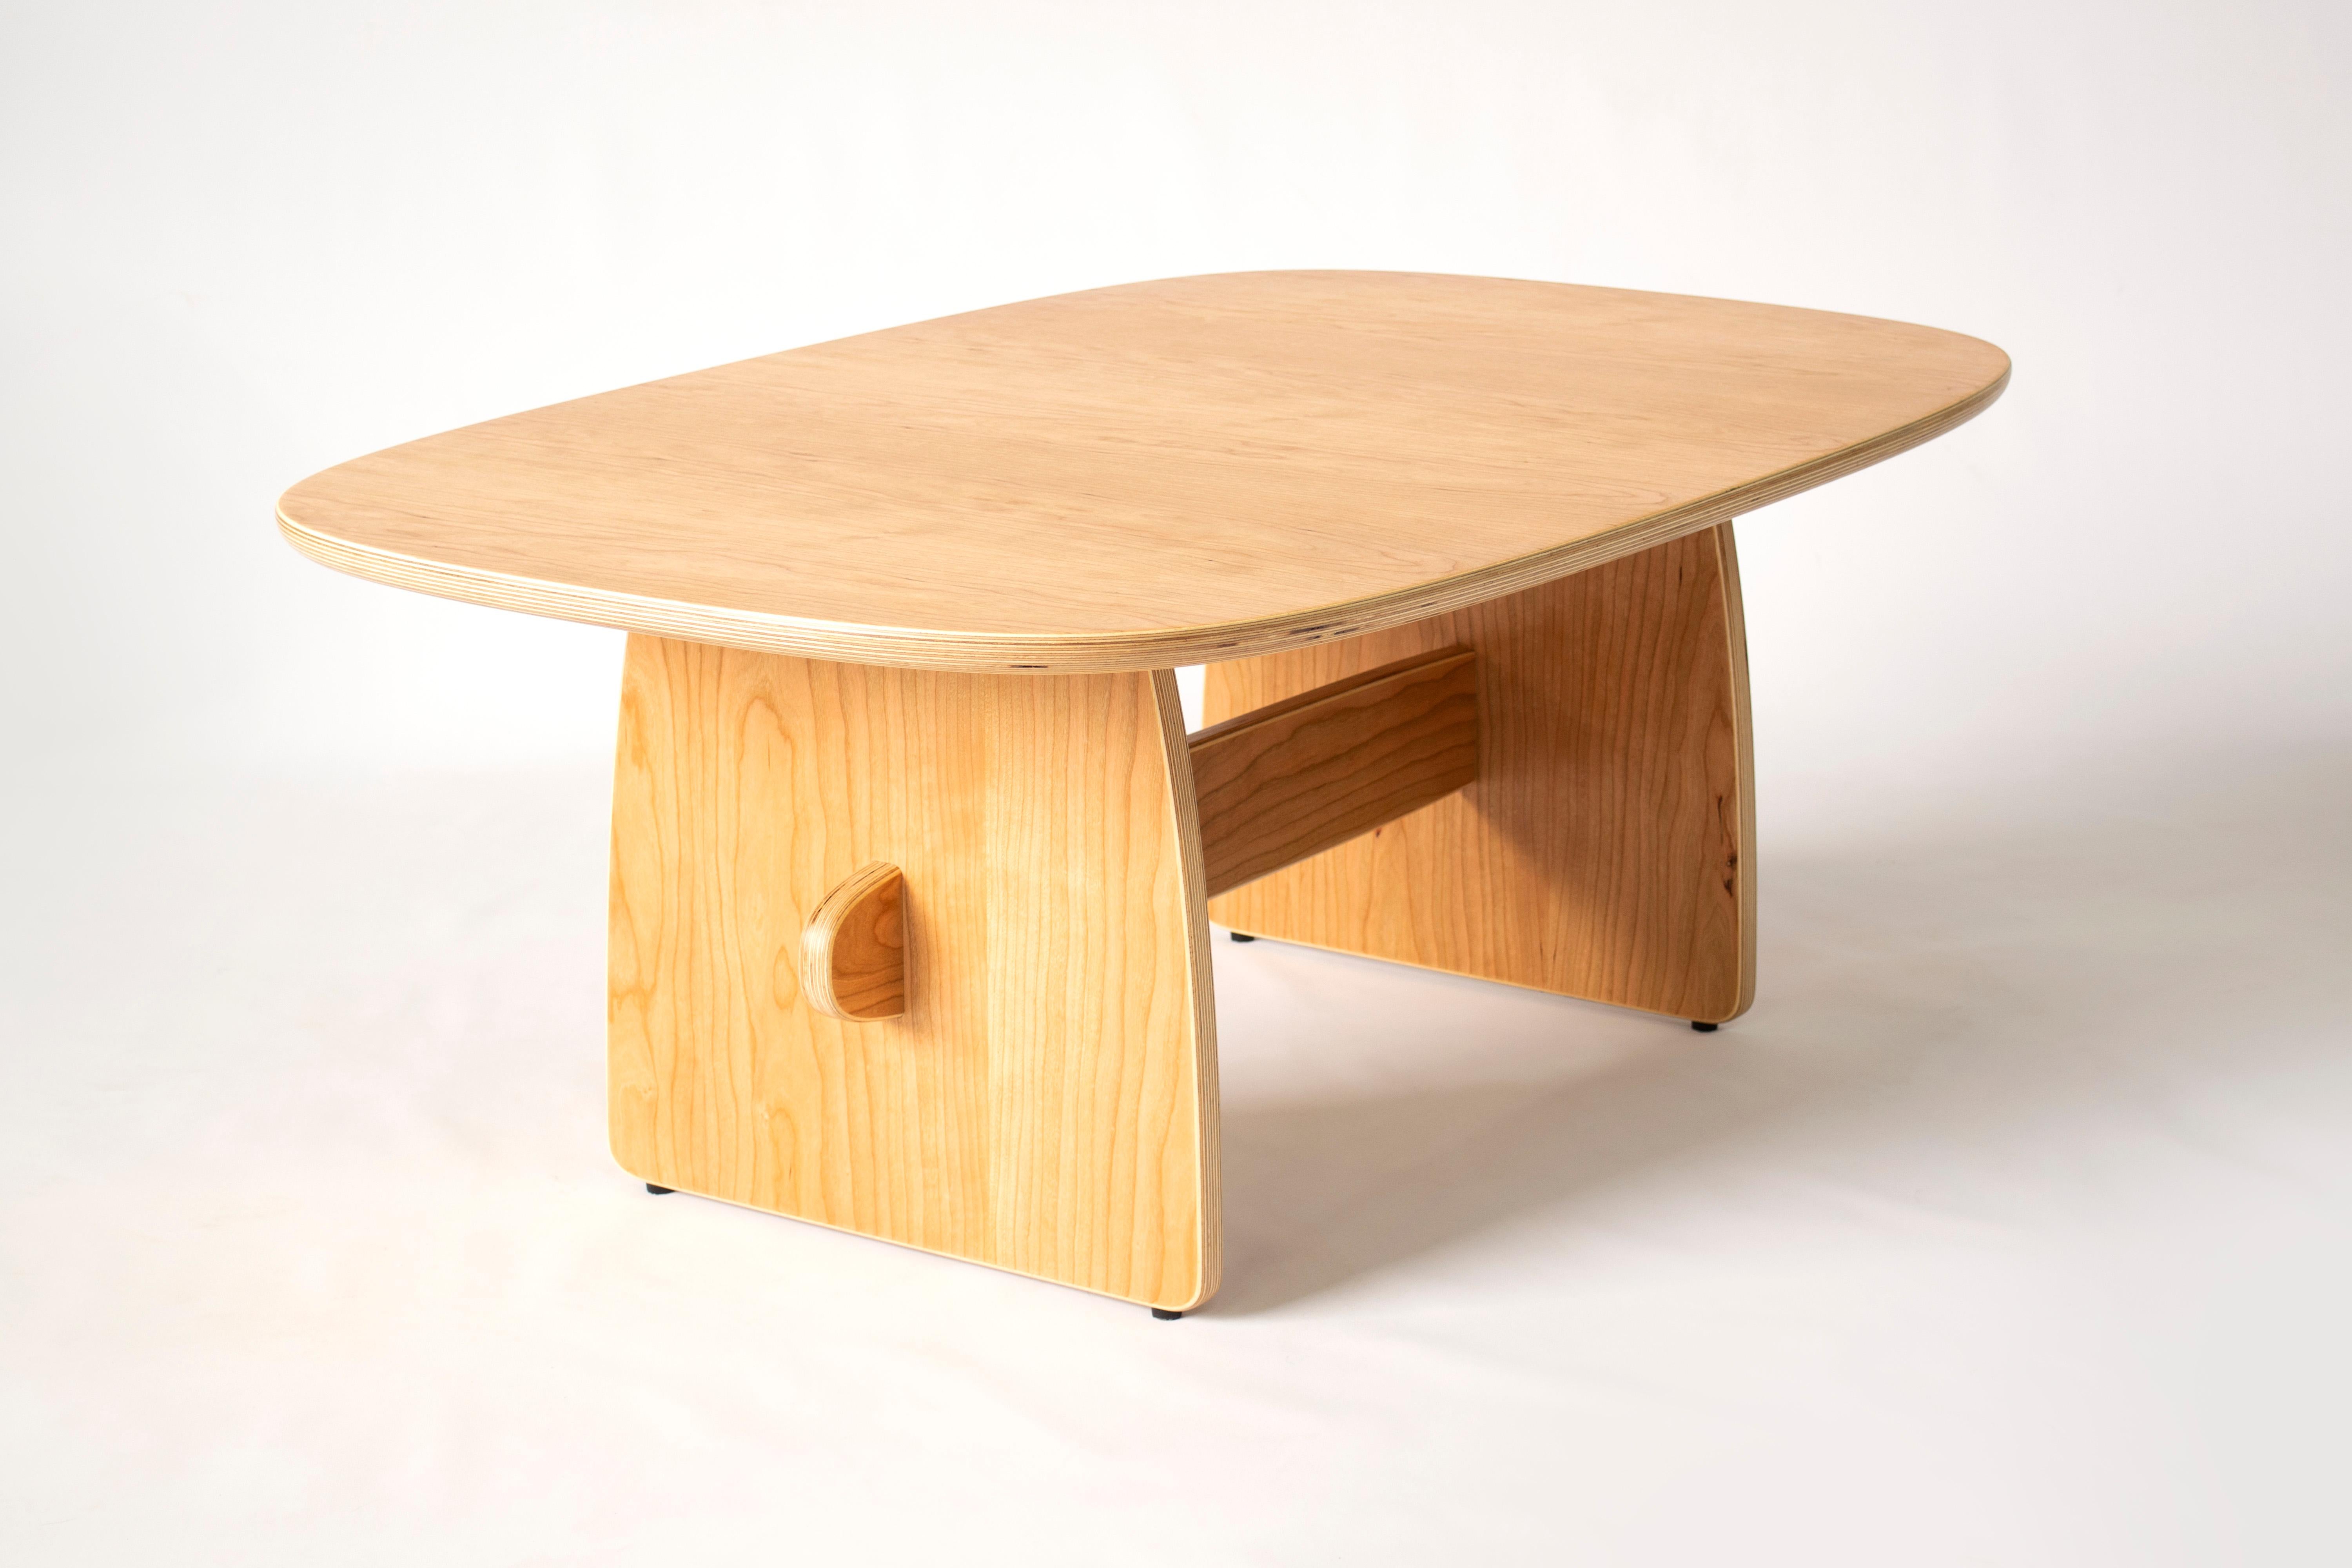 American Woodbine coffee table in cherry veneer hardwood plywood by KLN Studio For Sale